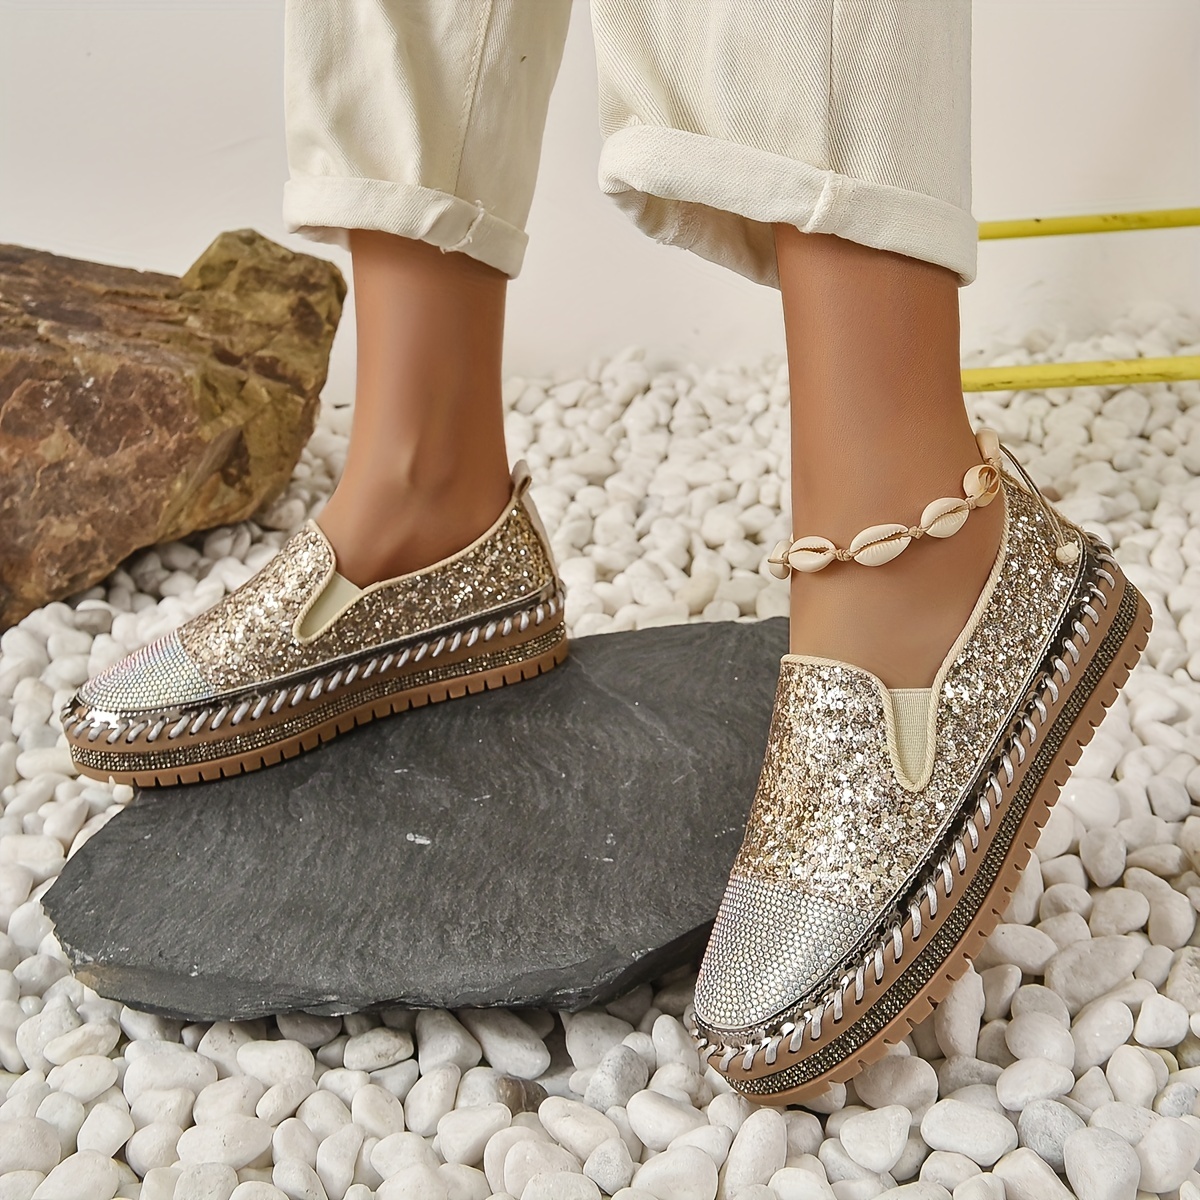 Women's Platform Rhinestones Glitter Sneaker Cute Bow Slip On Comfort  Sneaker Flat Loafer Casual Shoes